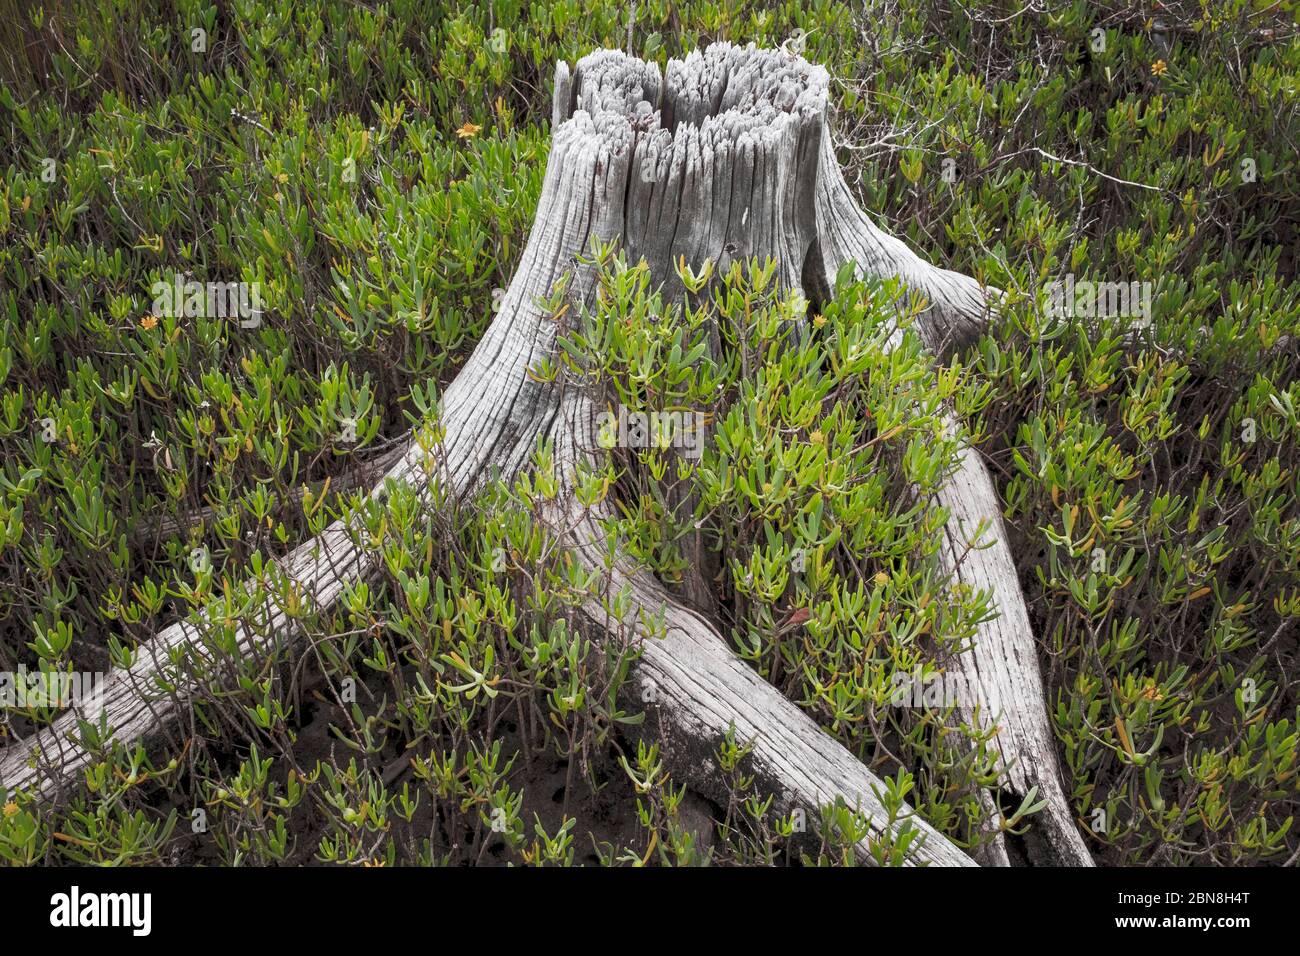 Salzsumpf Baum landschaftlich reizvolle Landschaft. Trockener Baumstamm und Wurzeln in Florida Salt Sumpf Lebensraum. Citrus County. Nord-Zentral-Florida. Stockfoto